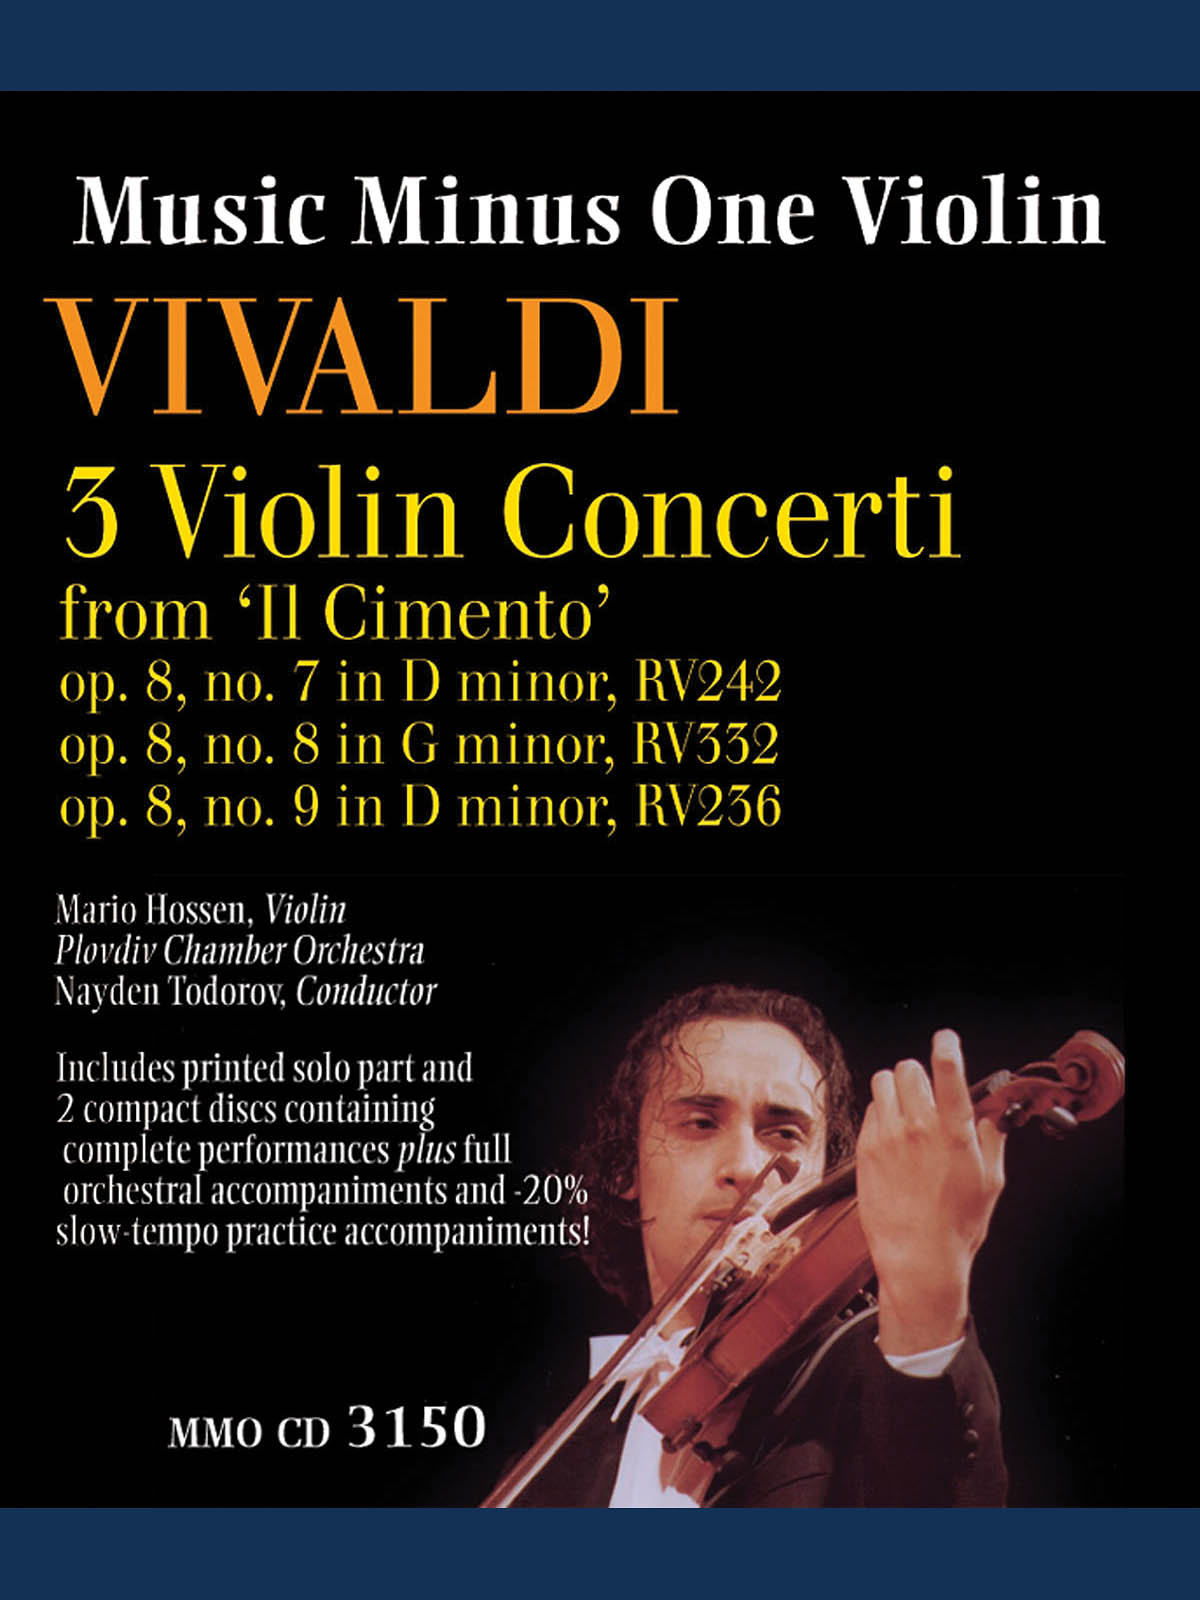 3 Violin Concerti from Il Cimento, Op. 8,Nos.7,8,9